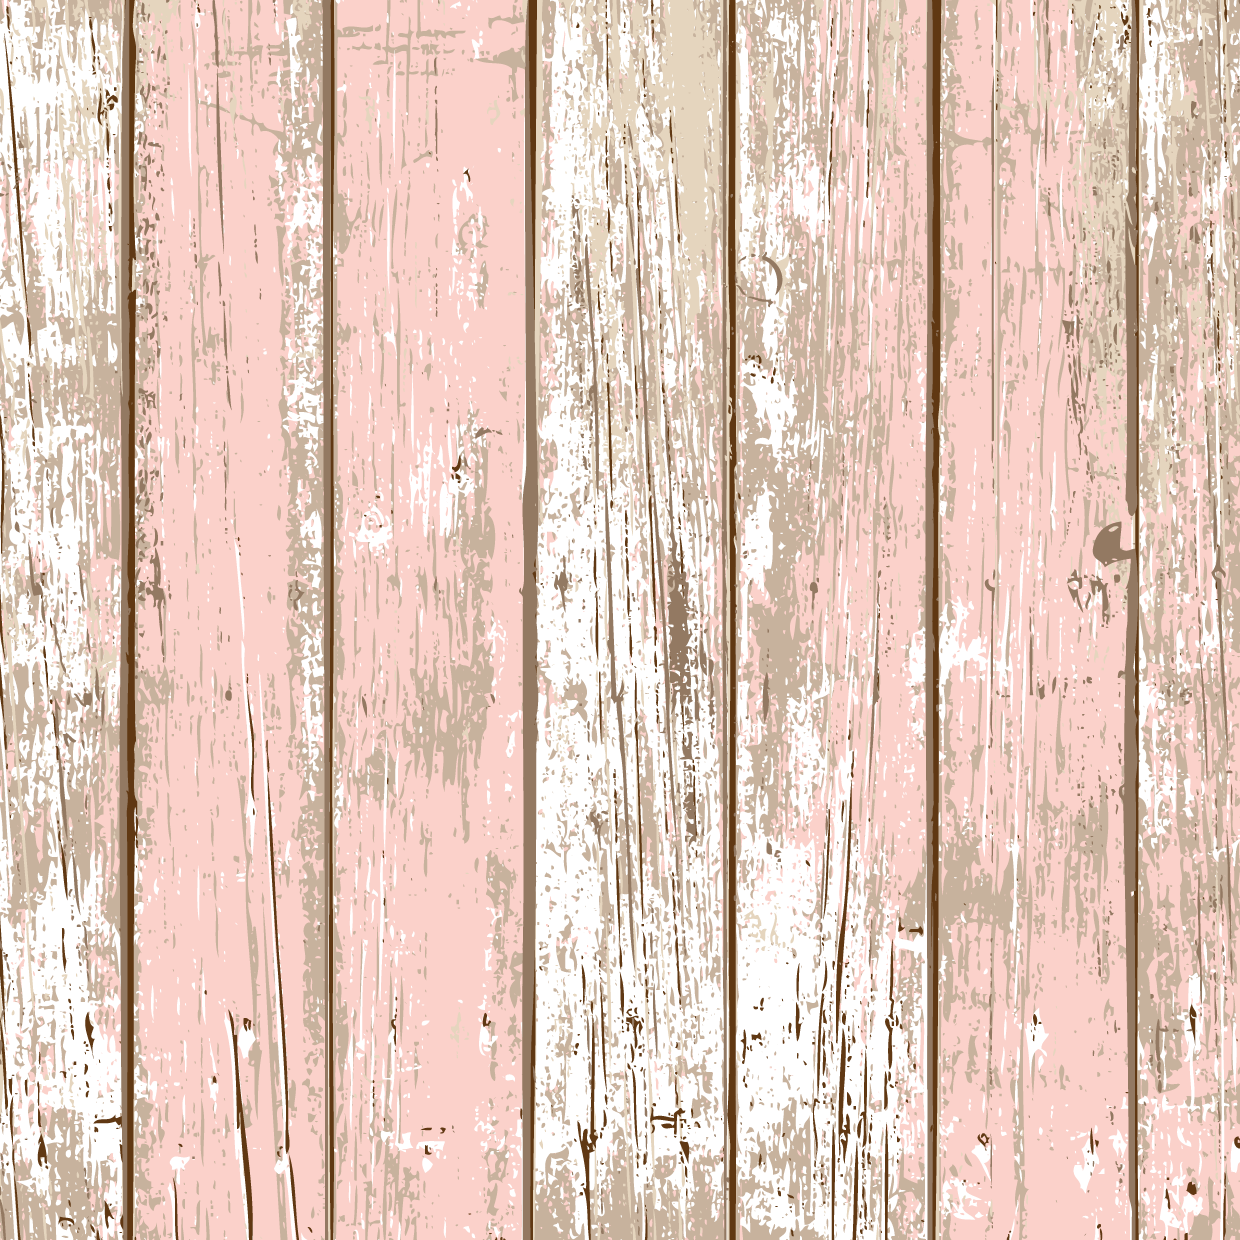  Holz Hintergrundbild 1240x1240. Alex Van Keteler. New Printable Wood Background. Wood background, Wood wallpaper, Background vintage